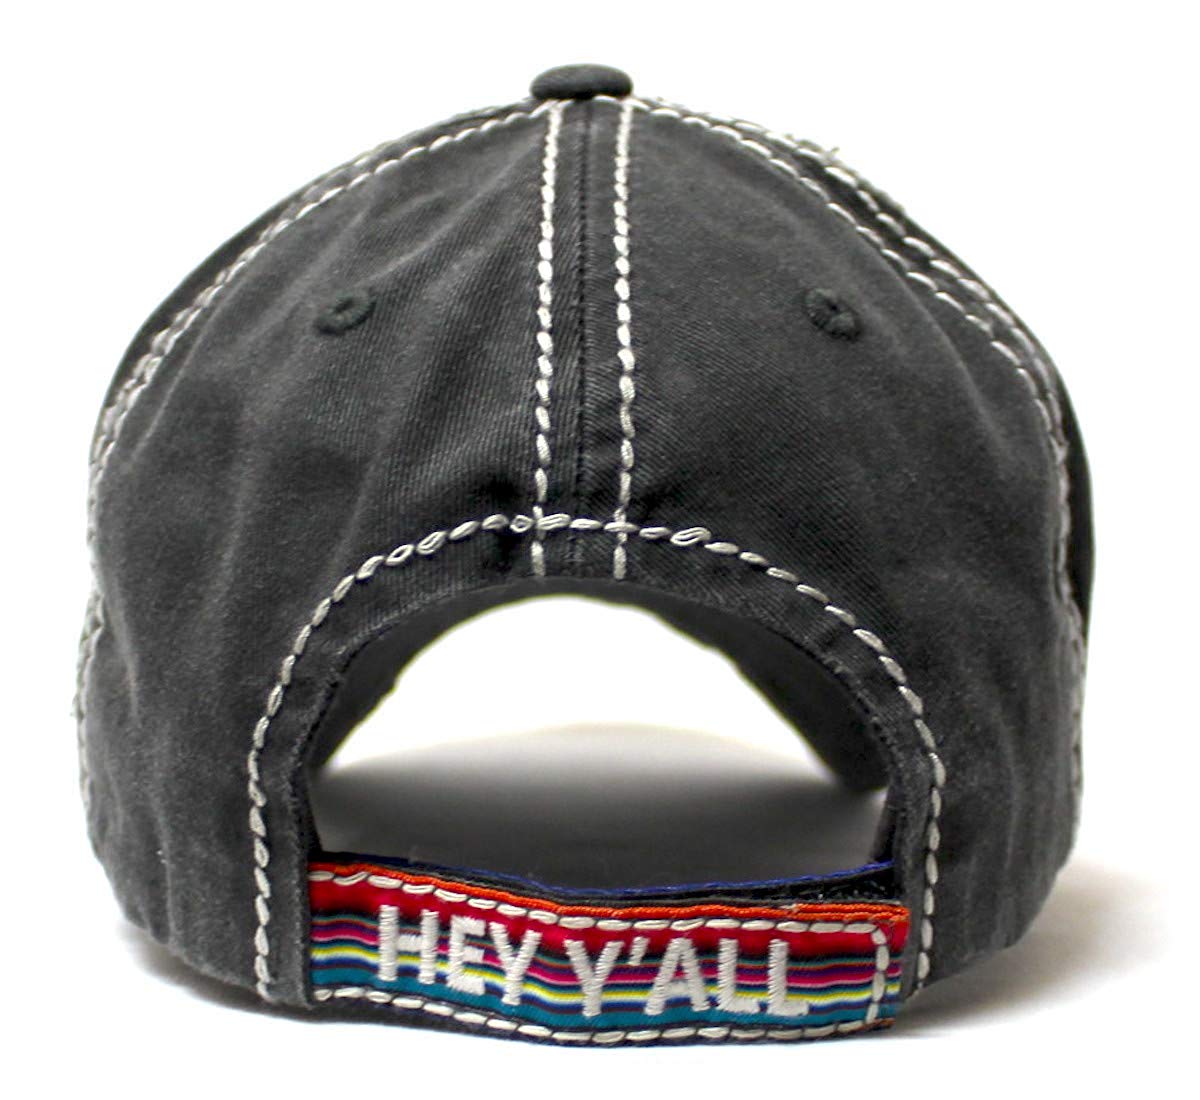 Hey Y'all Serape Monogram Embroidery Adjustable Hat, Vintage Black - Caps 'N Vintage 